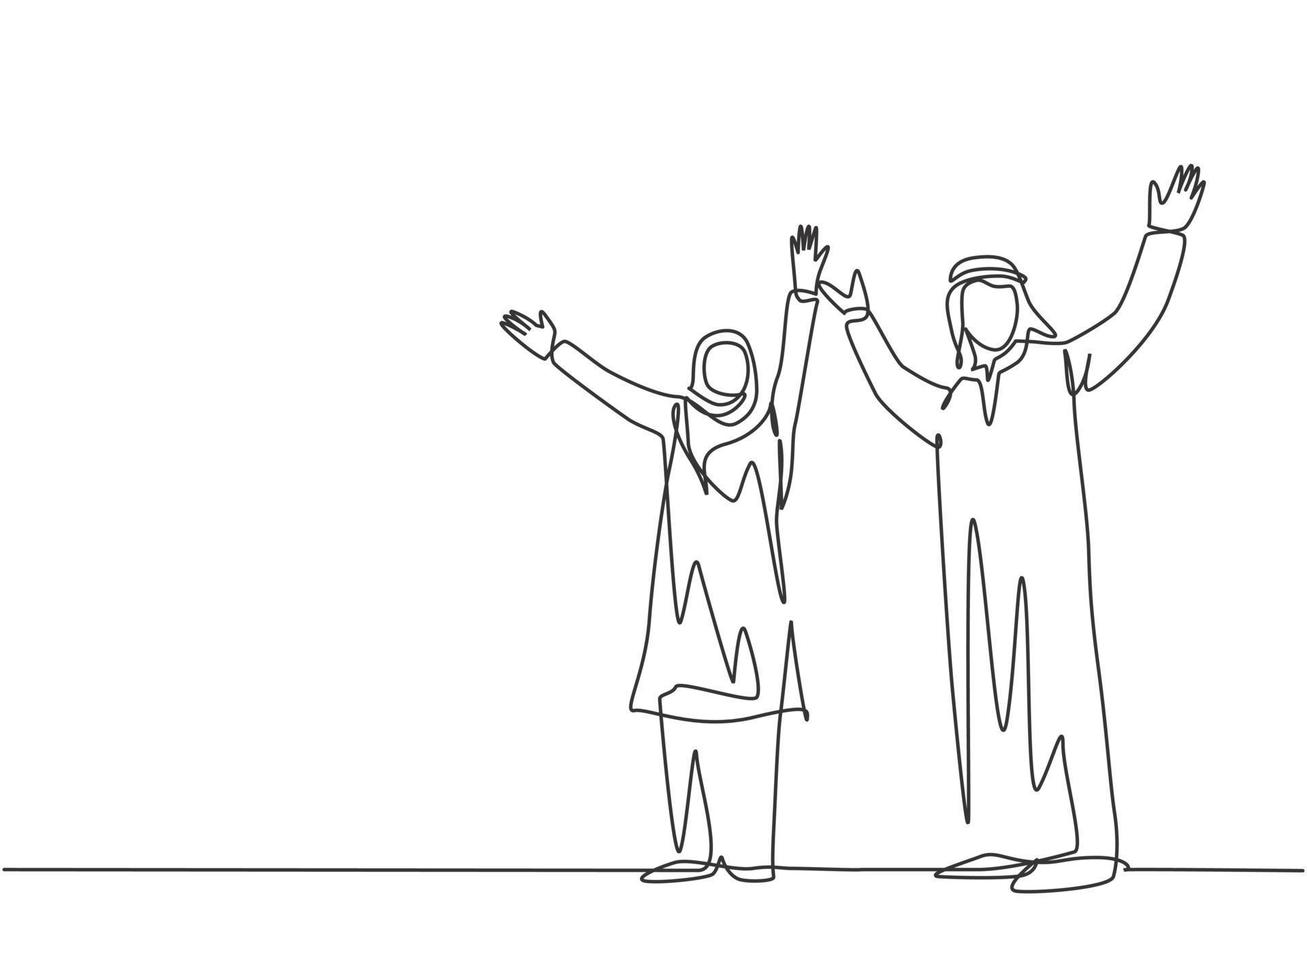 un singolo disegno a tratteggio di giovani uomini d'affari musulmani felici maschi e femmine celebrano un successo. arabia saudita hijab di stoffa, kandora, foulard, ghutra. illustrazione vettoriale di disegno di disegno di linea continua